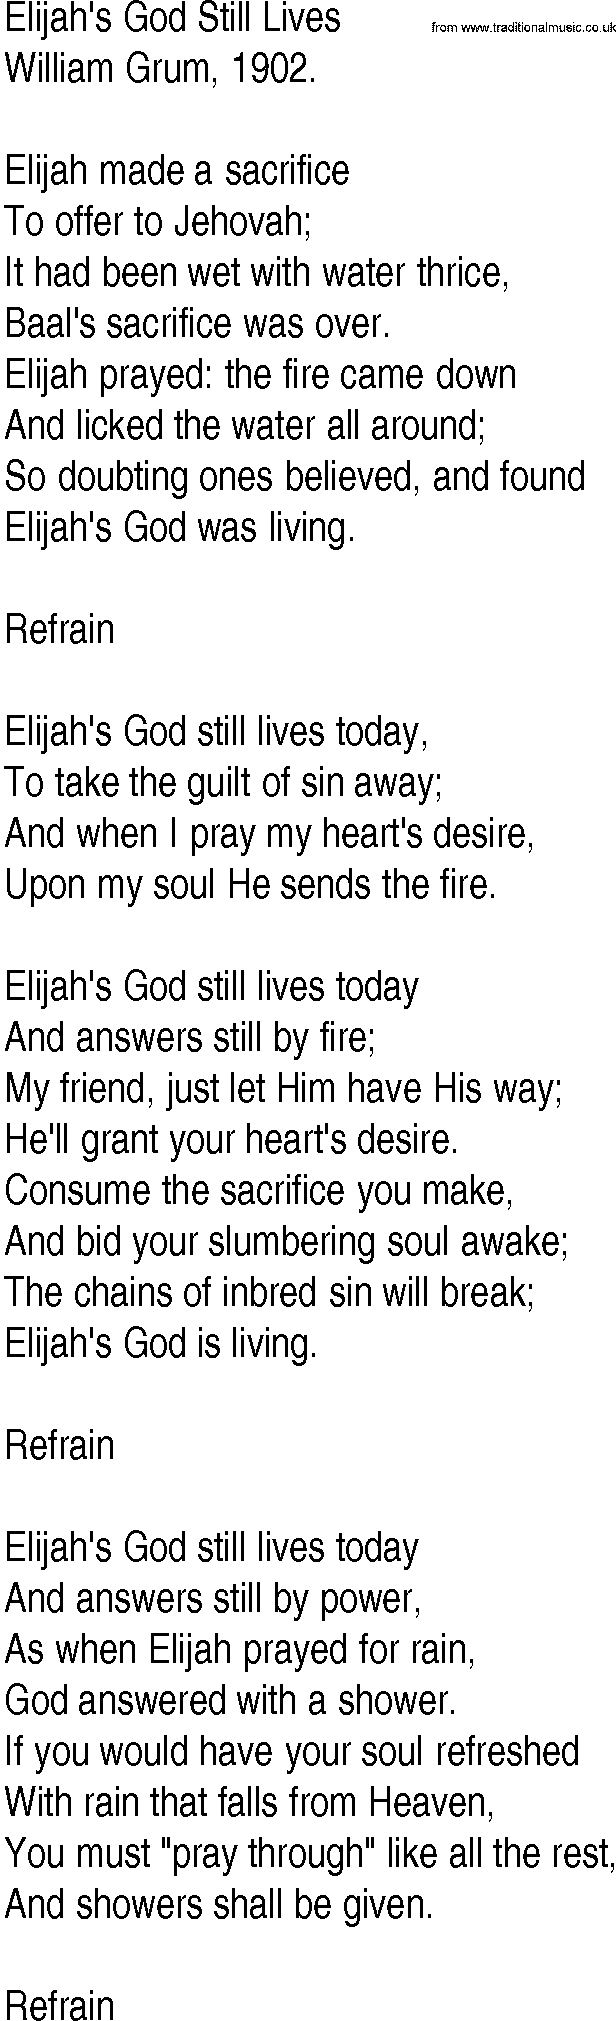 Hymn and Gospel Song: Elijah's God Still Lives by William Grum lyrics